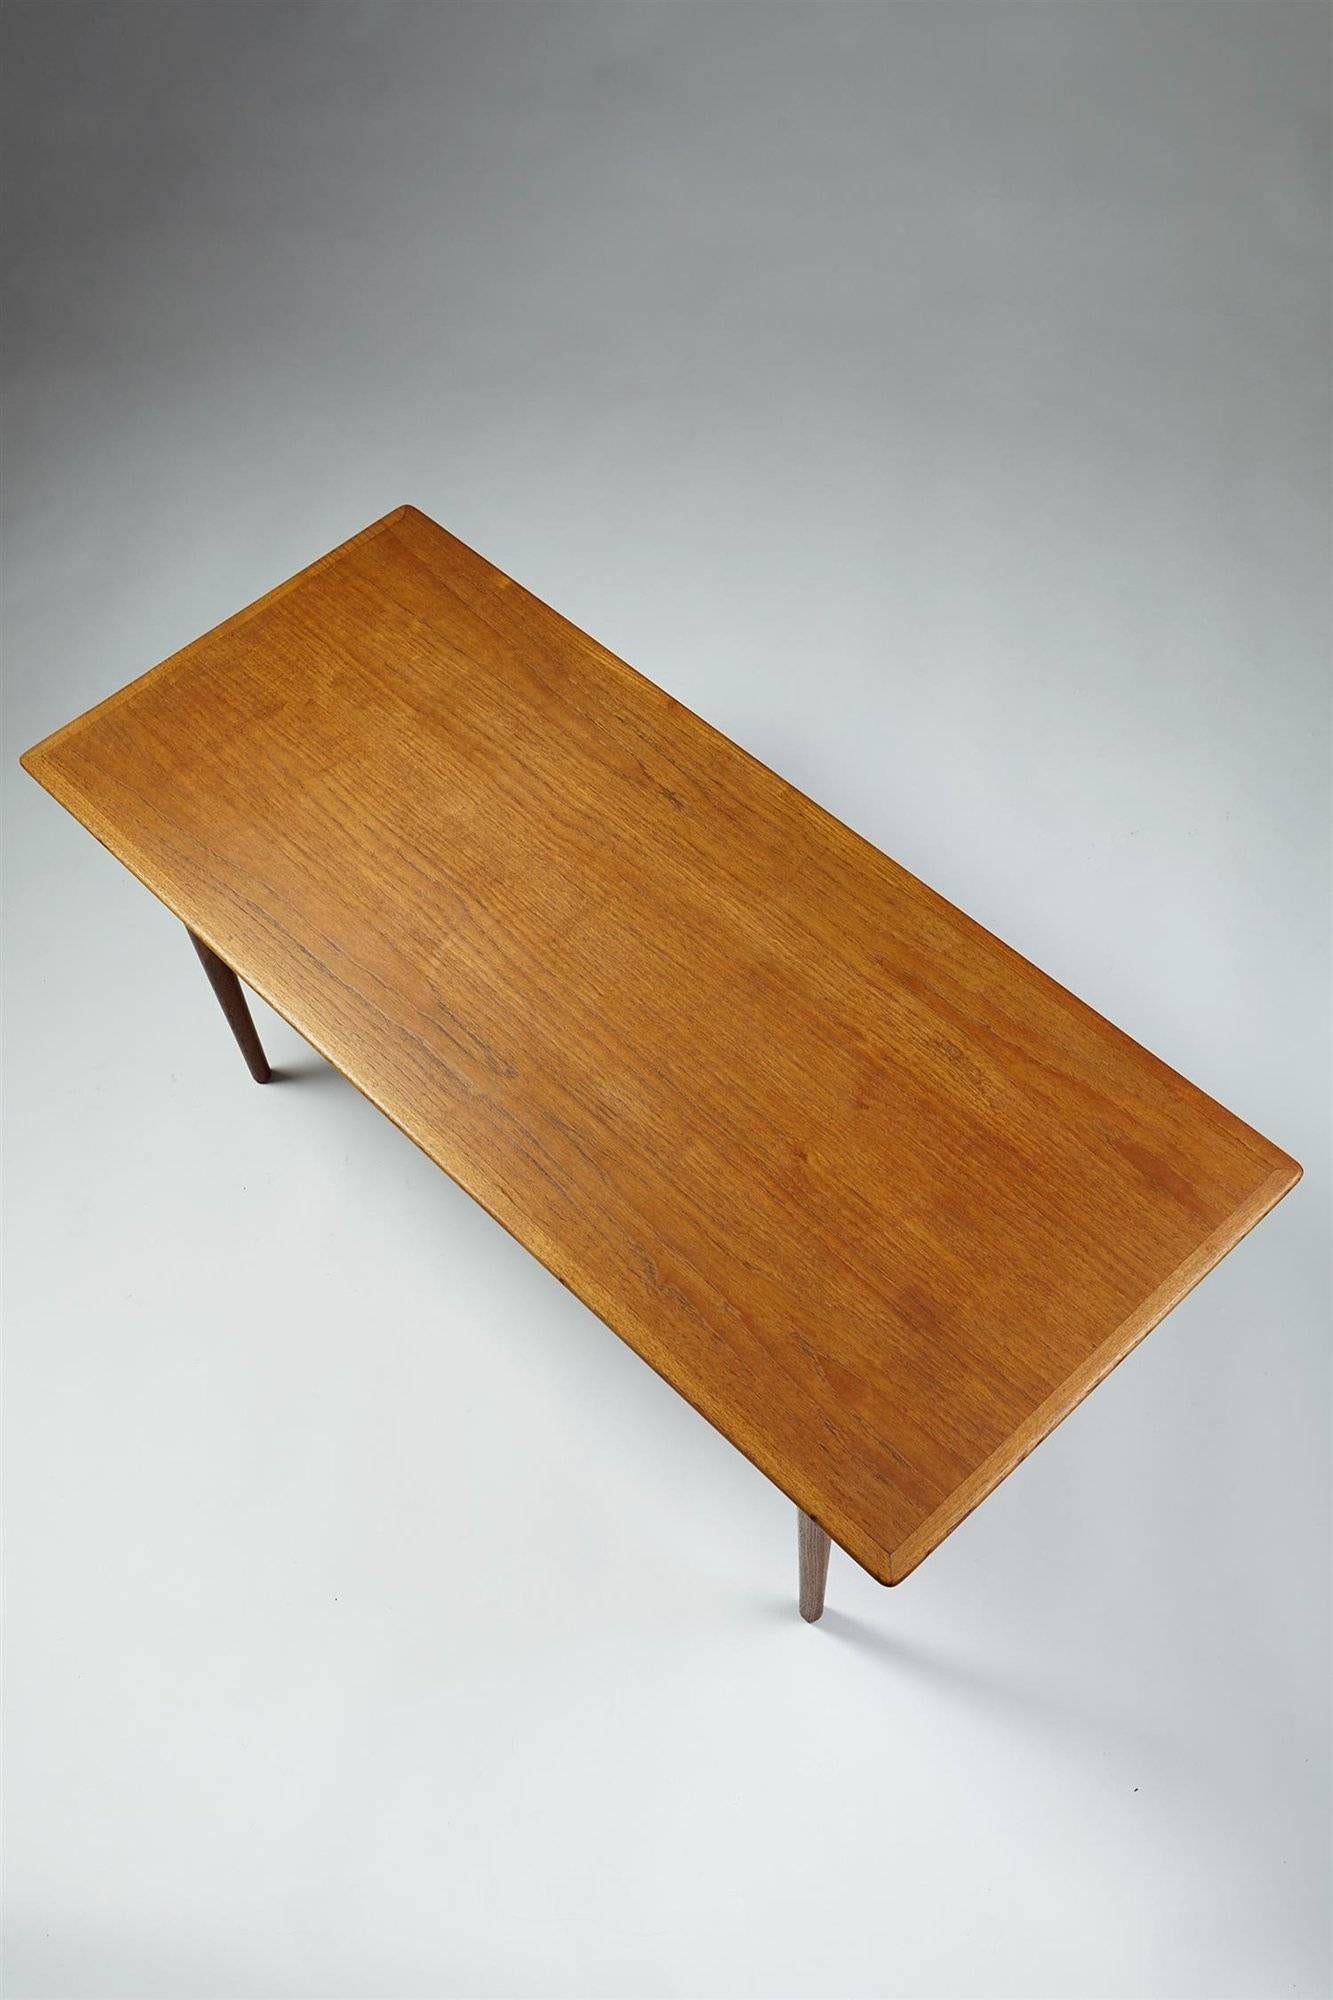 Scandinavian Modern Occasional Table Designed by Finn Juhl for Bovirke, Denmark, 1950s